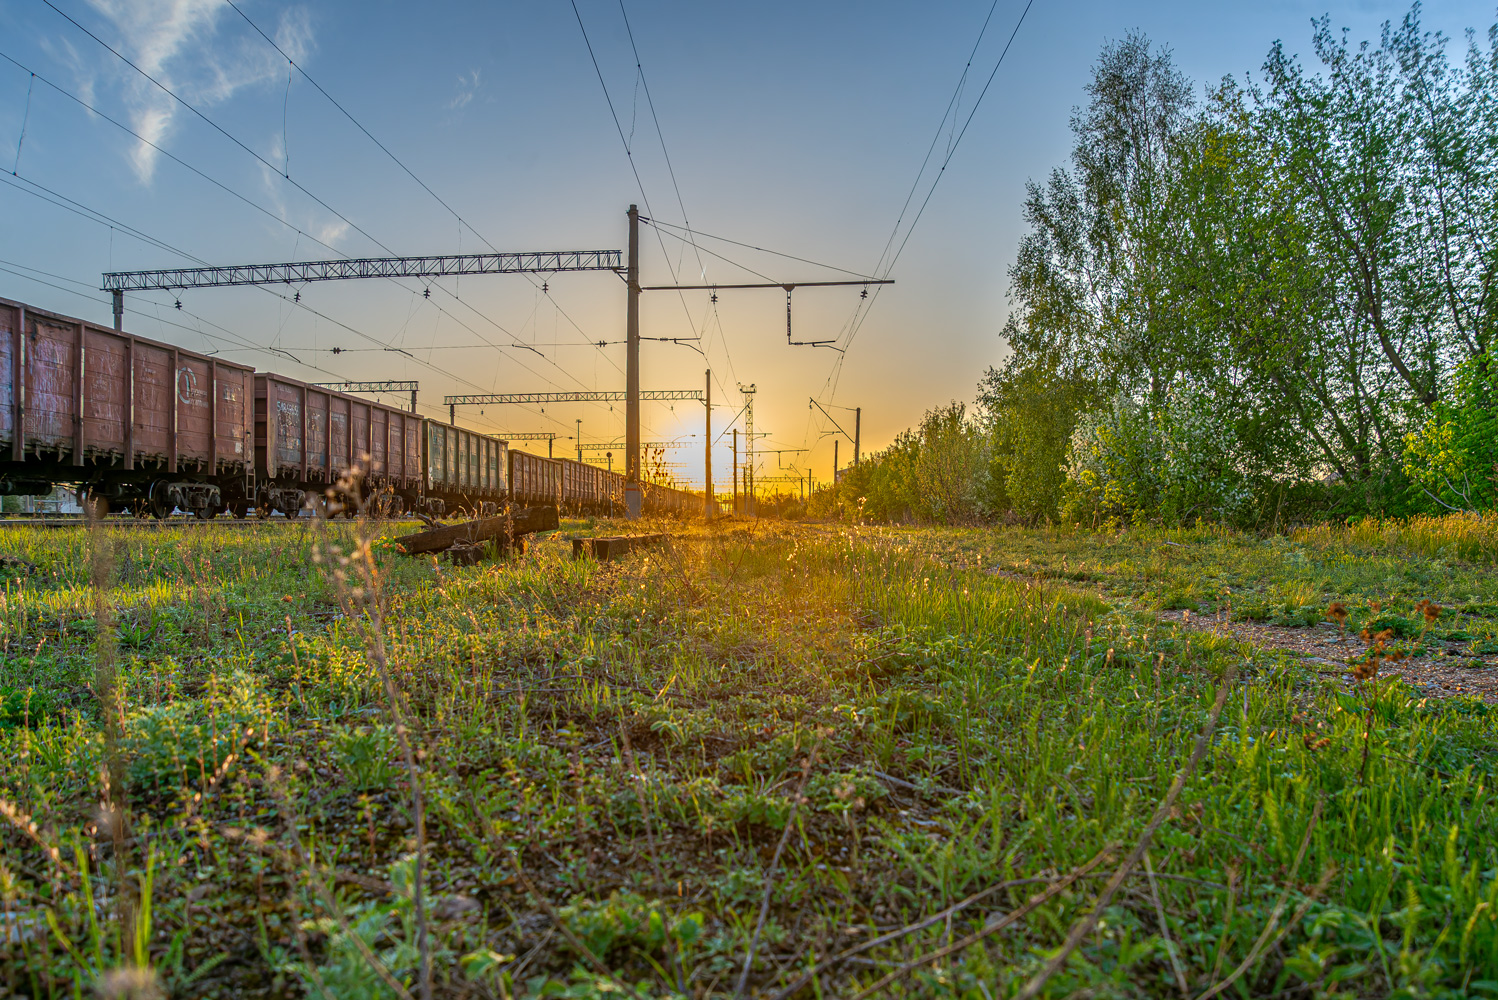 Kuybyshev Railway — Stations